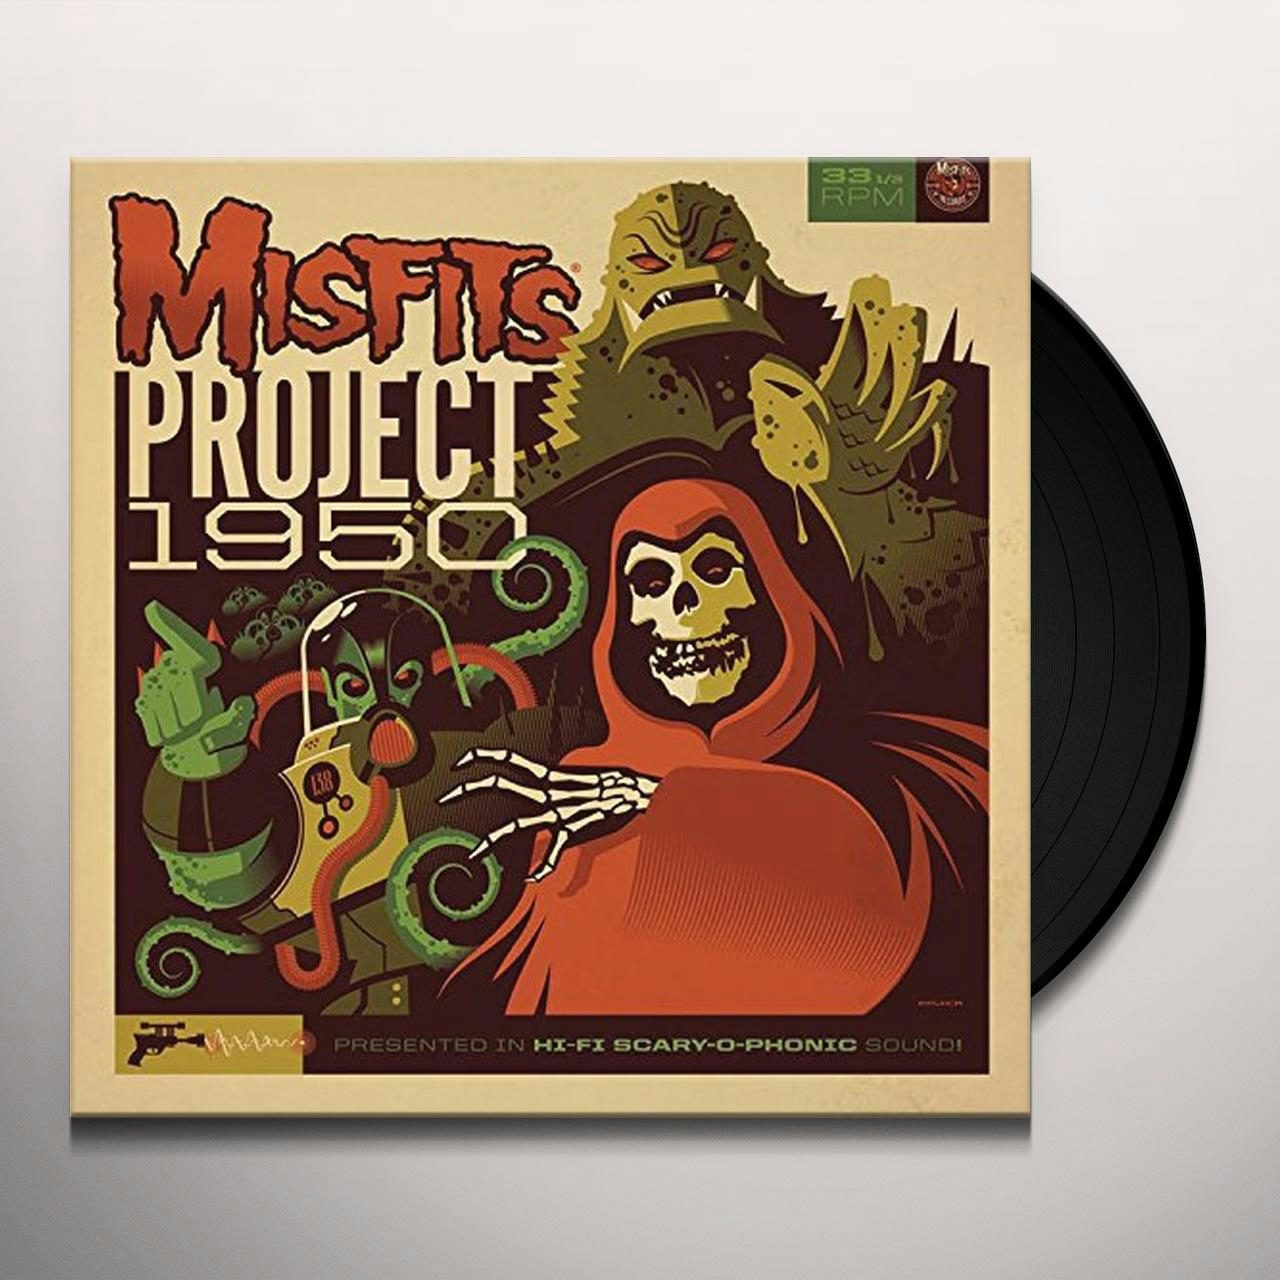 Project 1950 Vinyl Record - Misfits